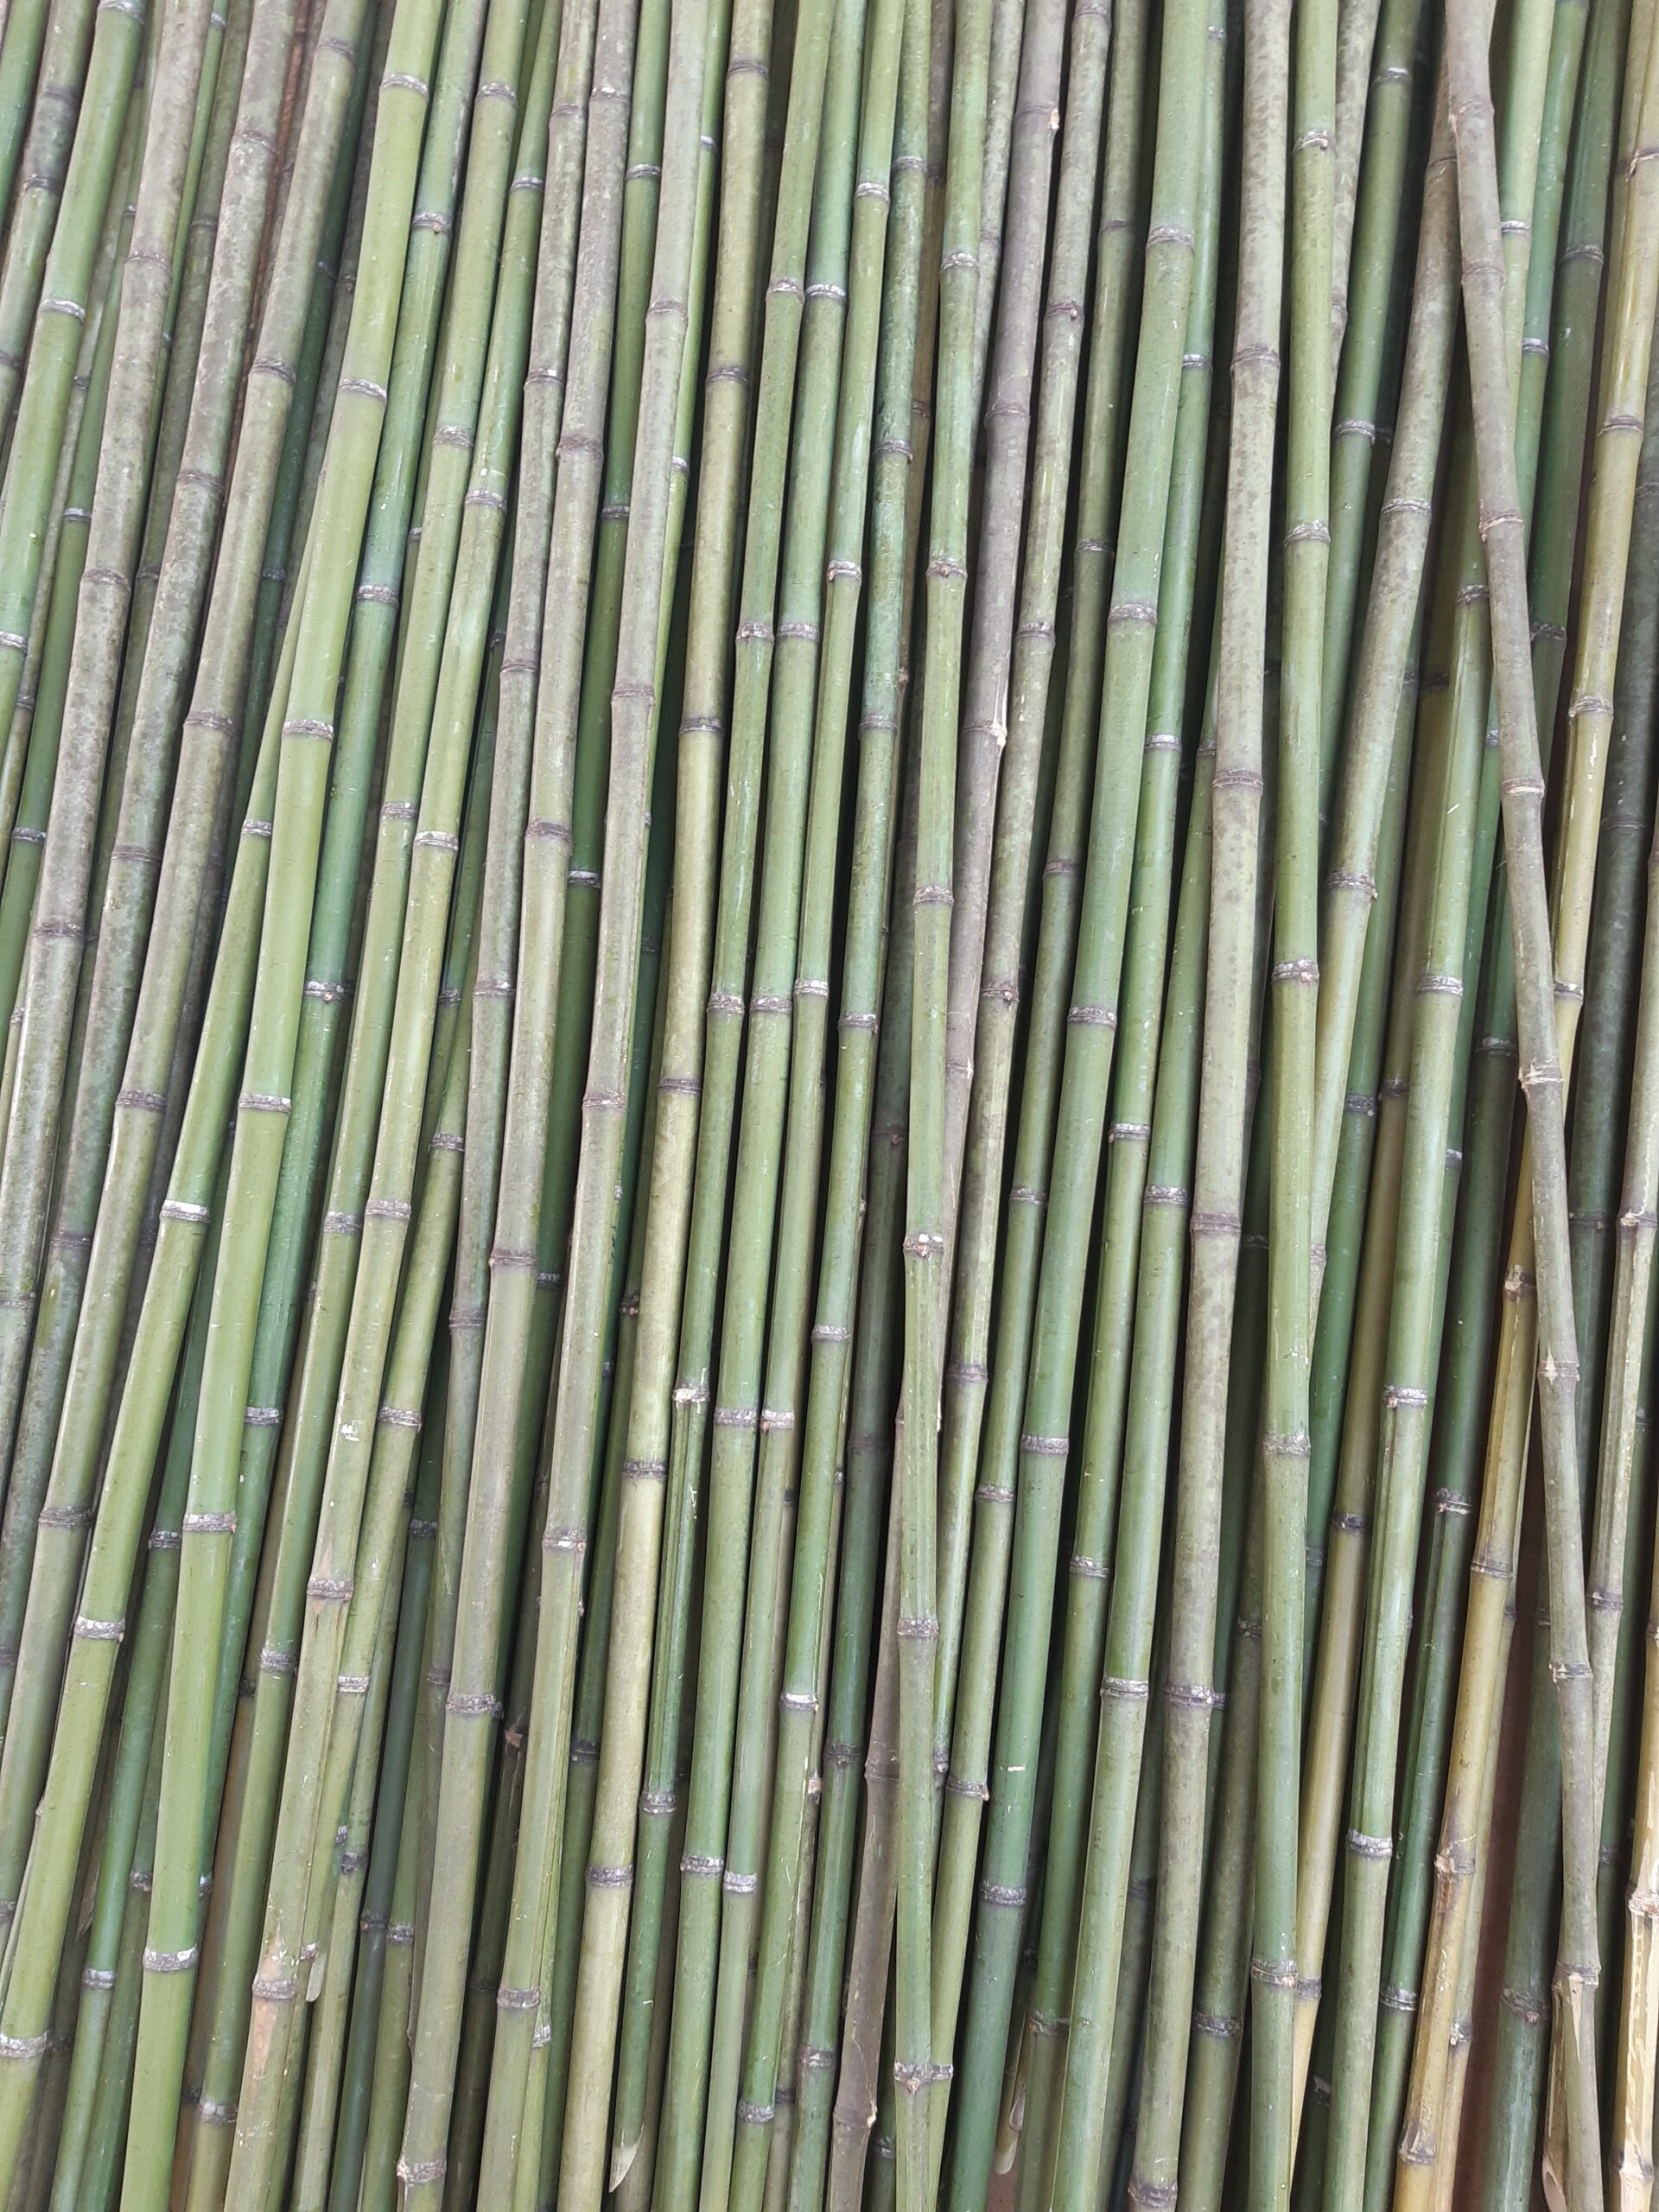 painel de bambu fracionado